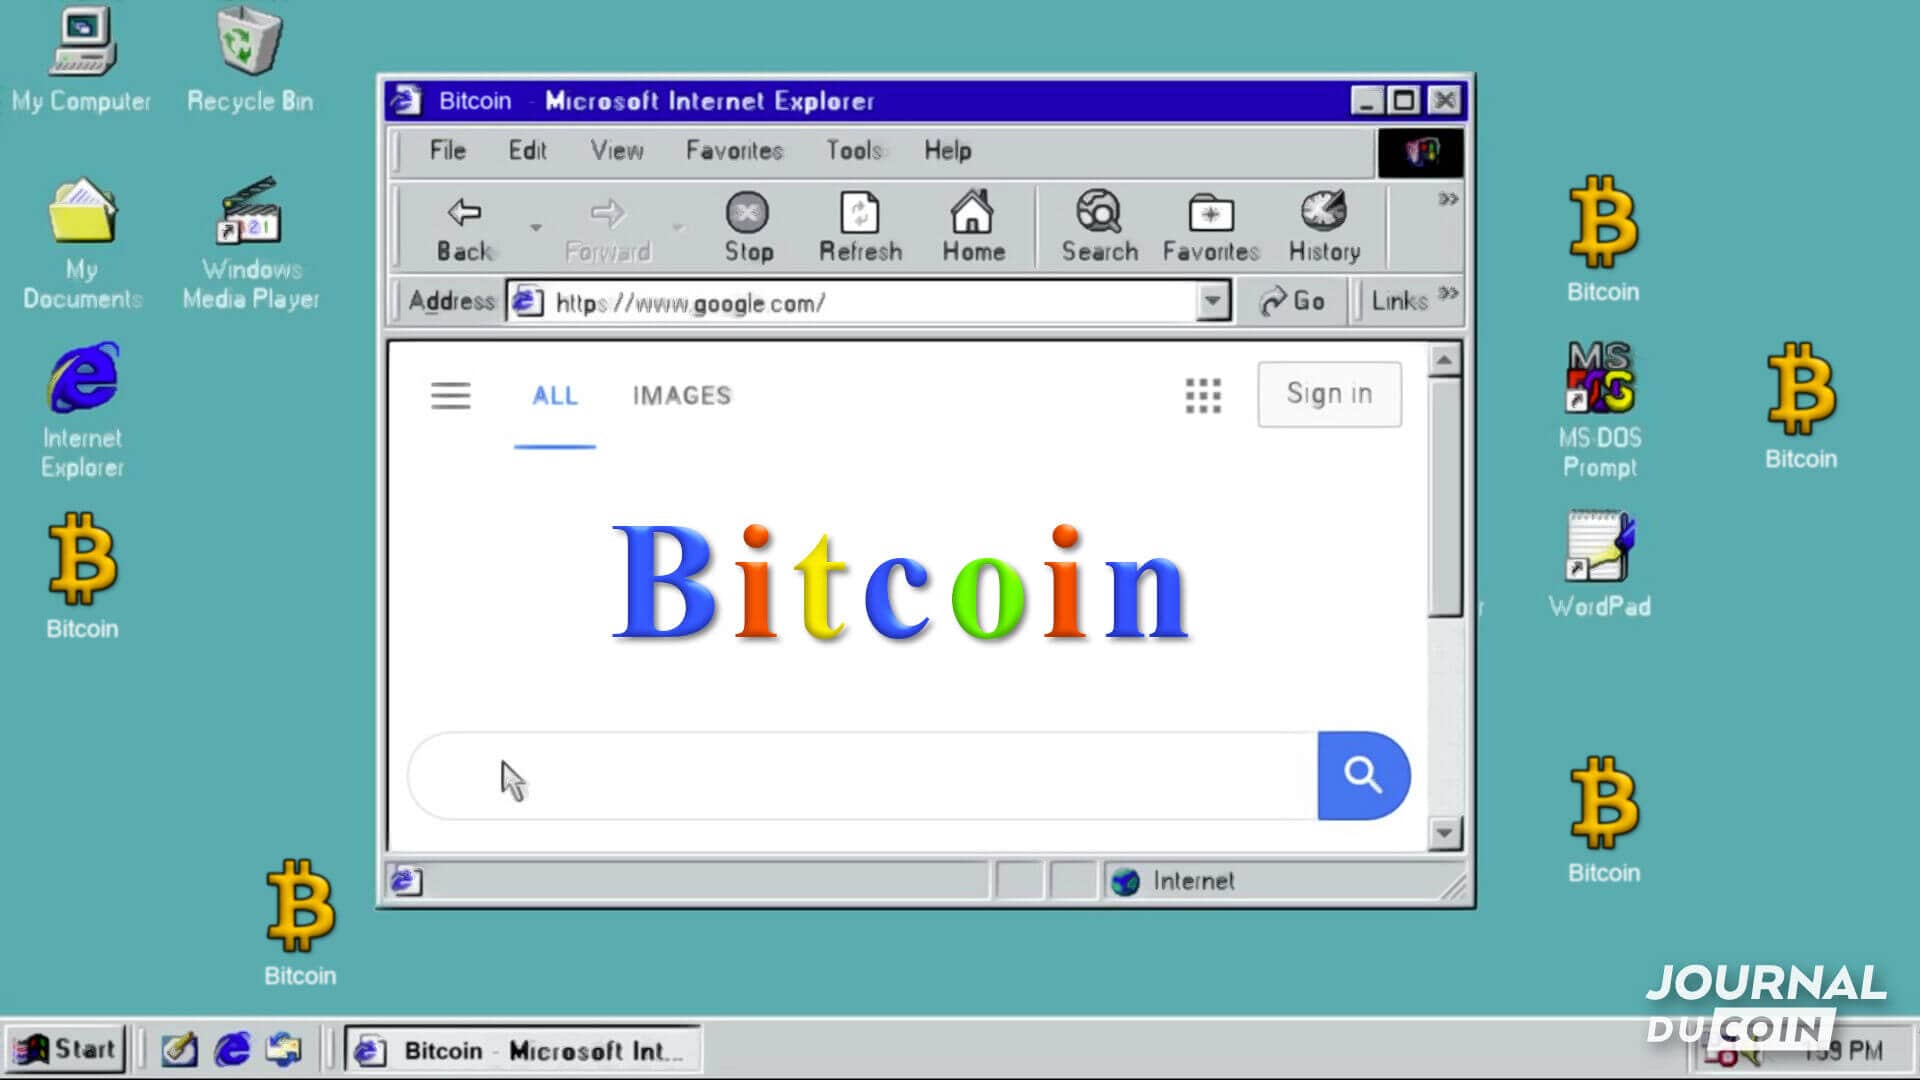 Vieille interface windows sur laquelle on peut voir apparaitre le mot Bitcoin avec la police et typographie de Google.